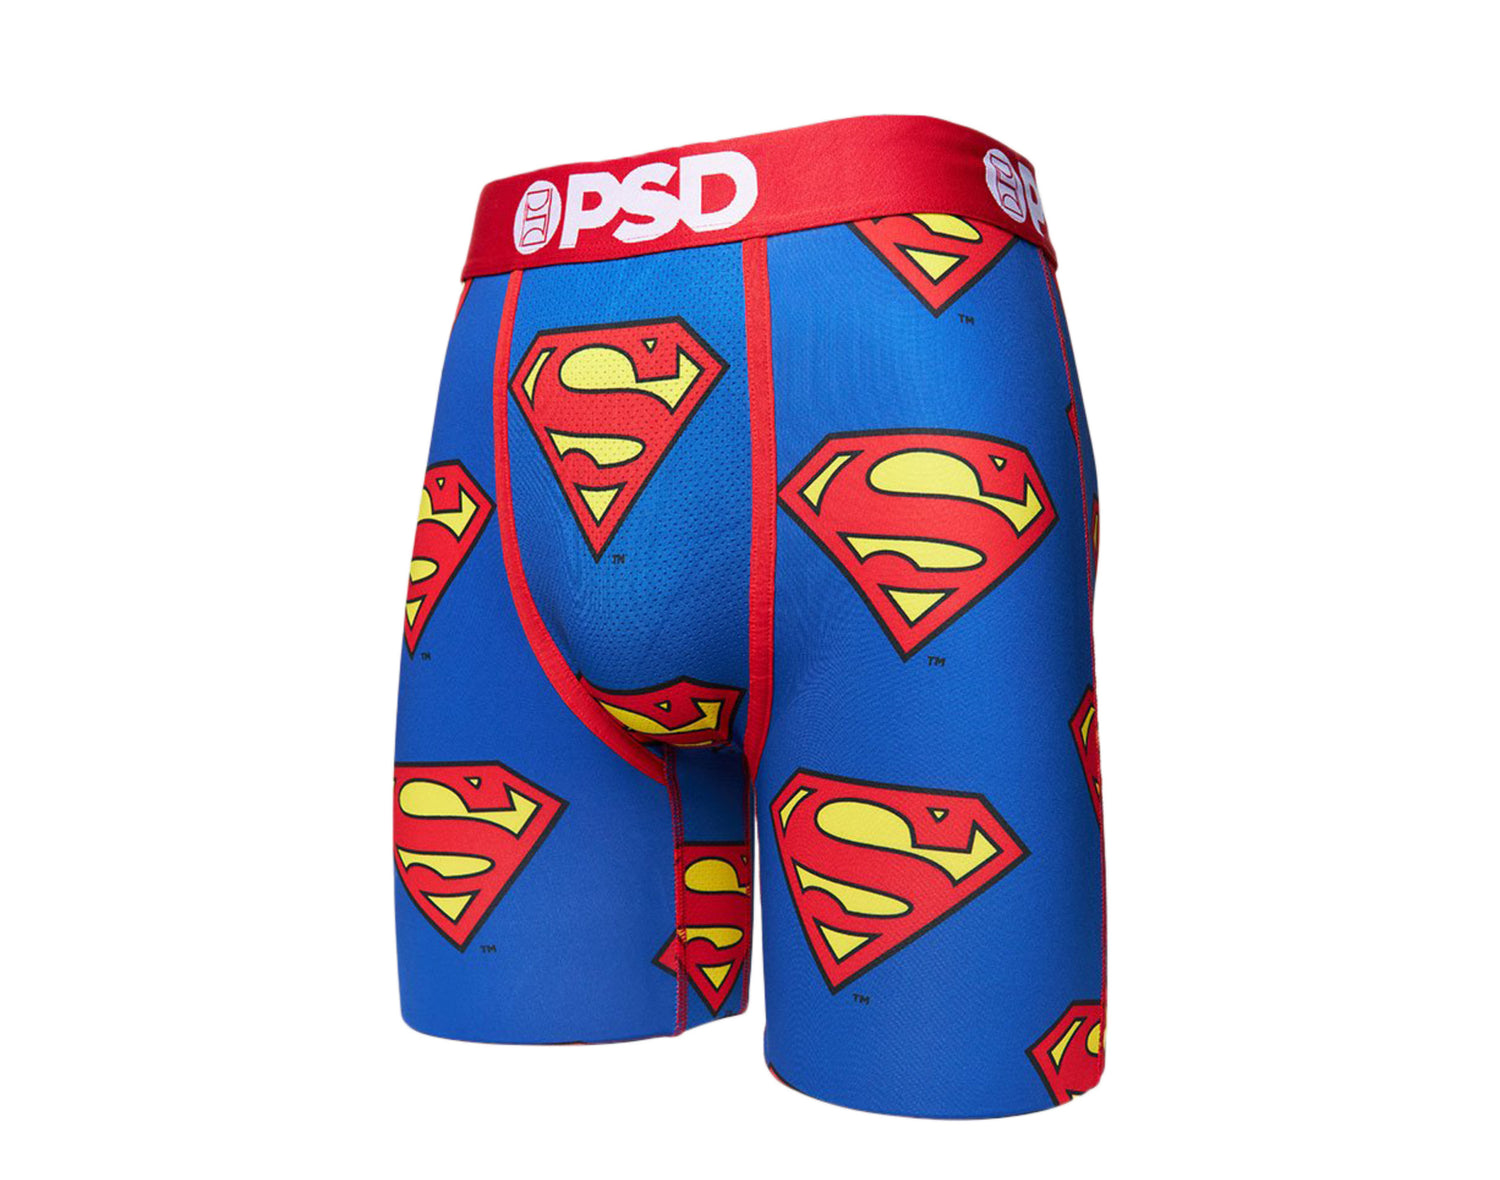 PSD DC - Superman Boxer Briefs Men's Underwear